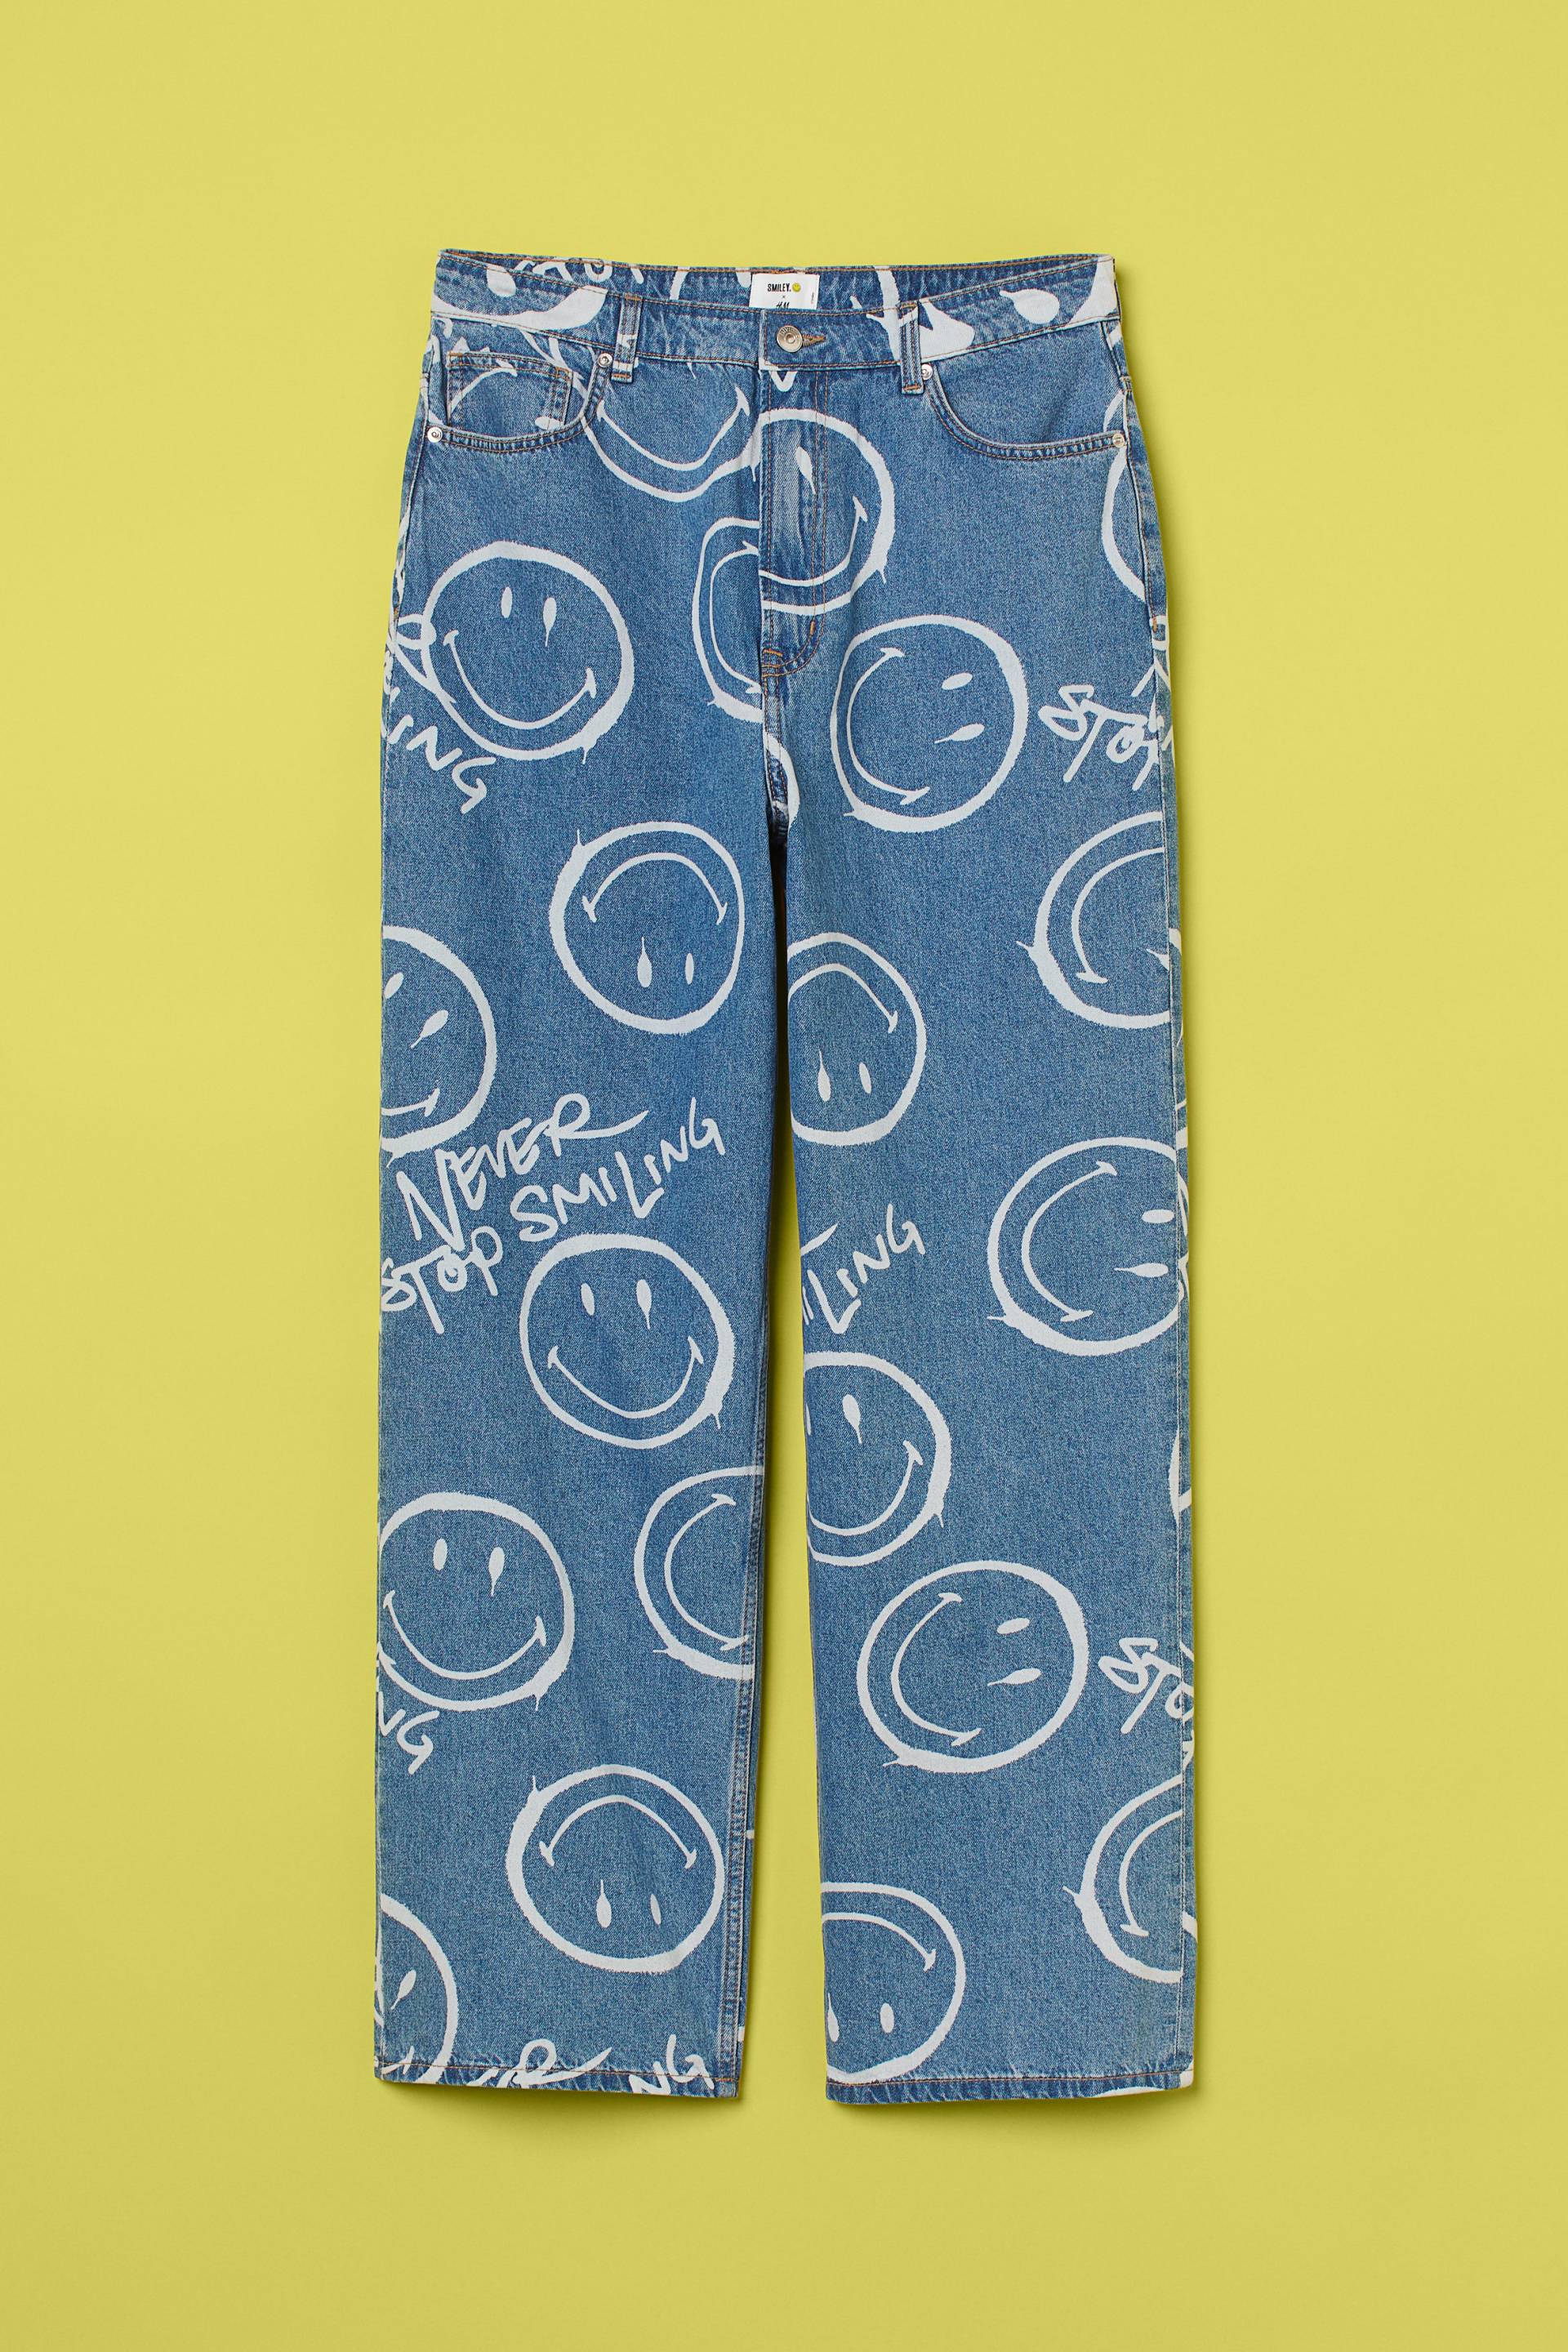 H&M+ Loose High Jeans Blau/Smiley®, Baggy in Größe XXL. Farbe: Denim blue/smiley® von H&M